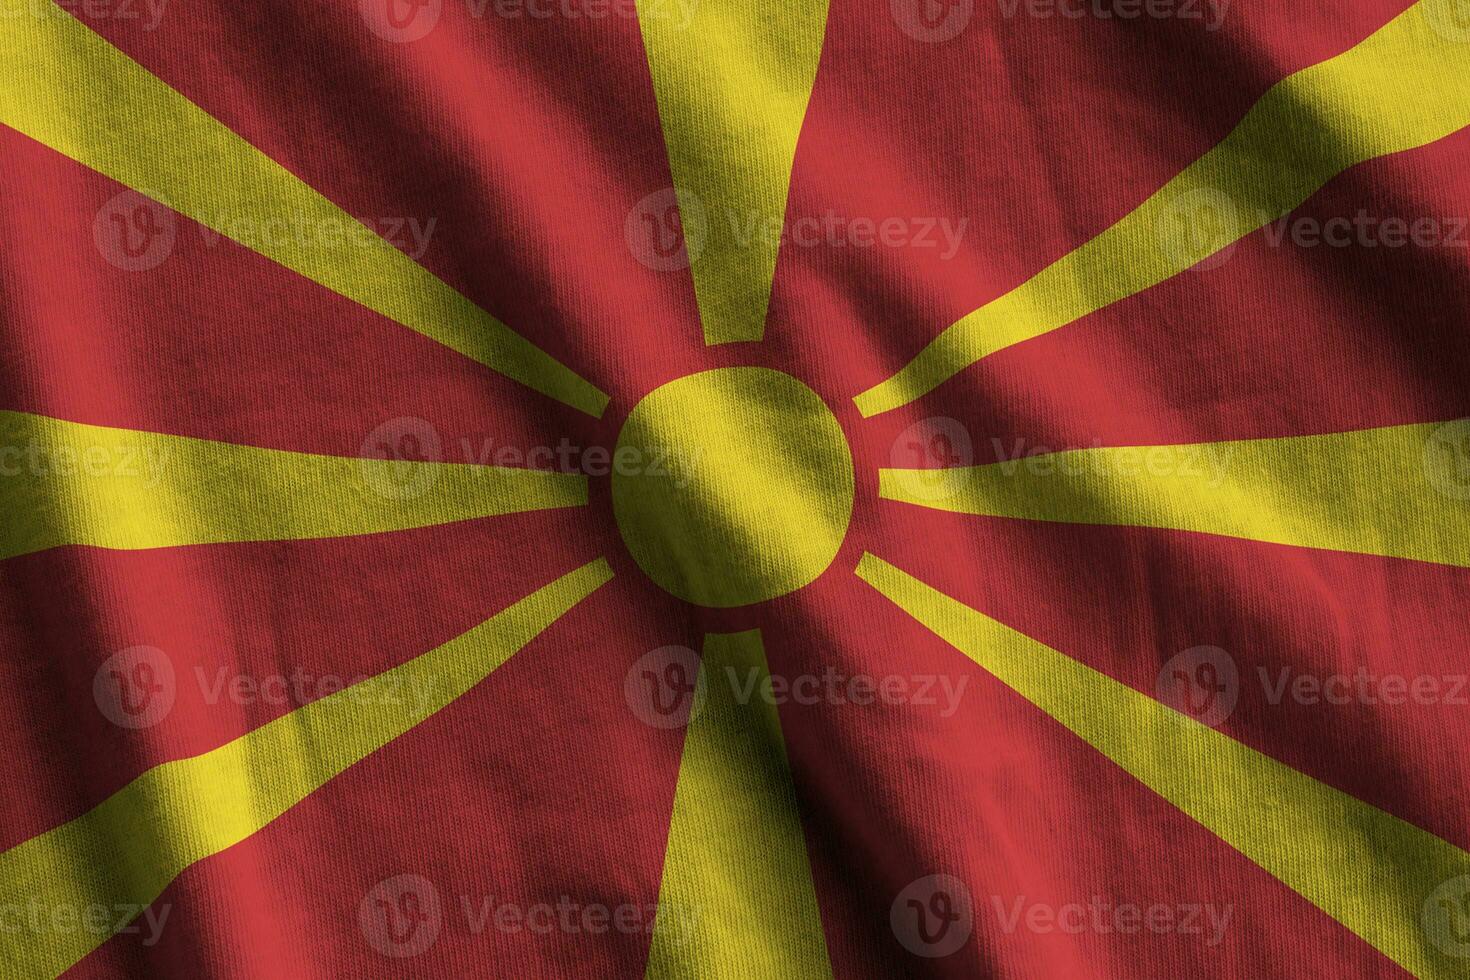 macedonia flagga med stor veck vinka stänga upp under de studio ljus inomhus. de officiell symboler och färger i baner foto